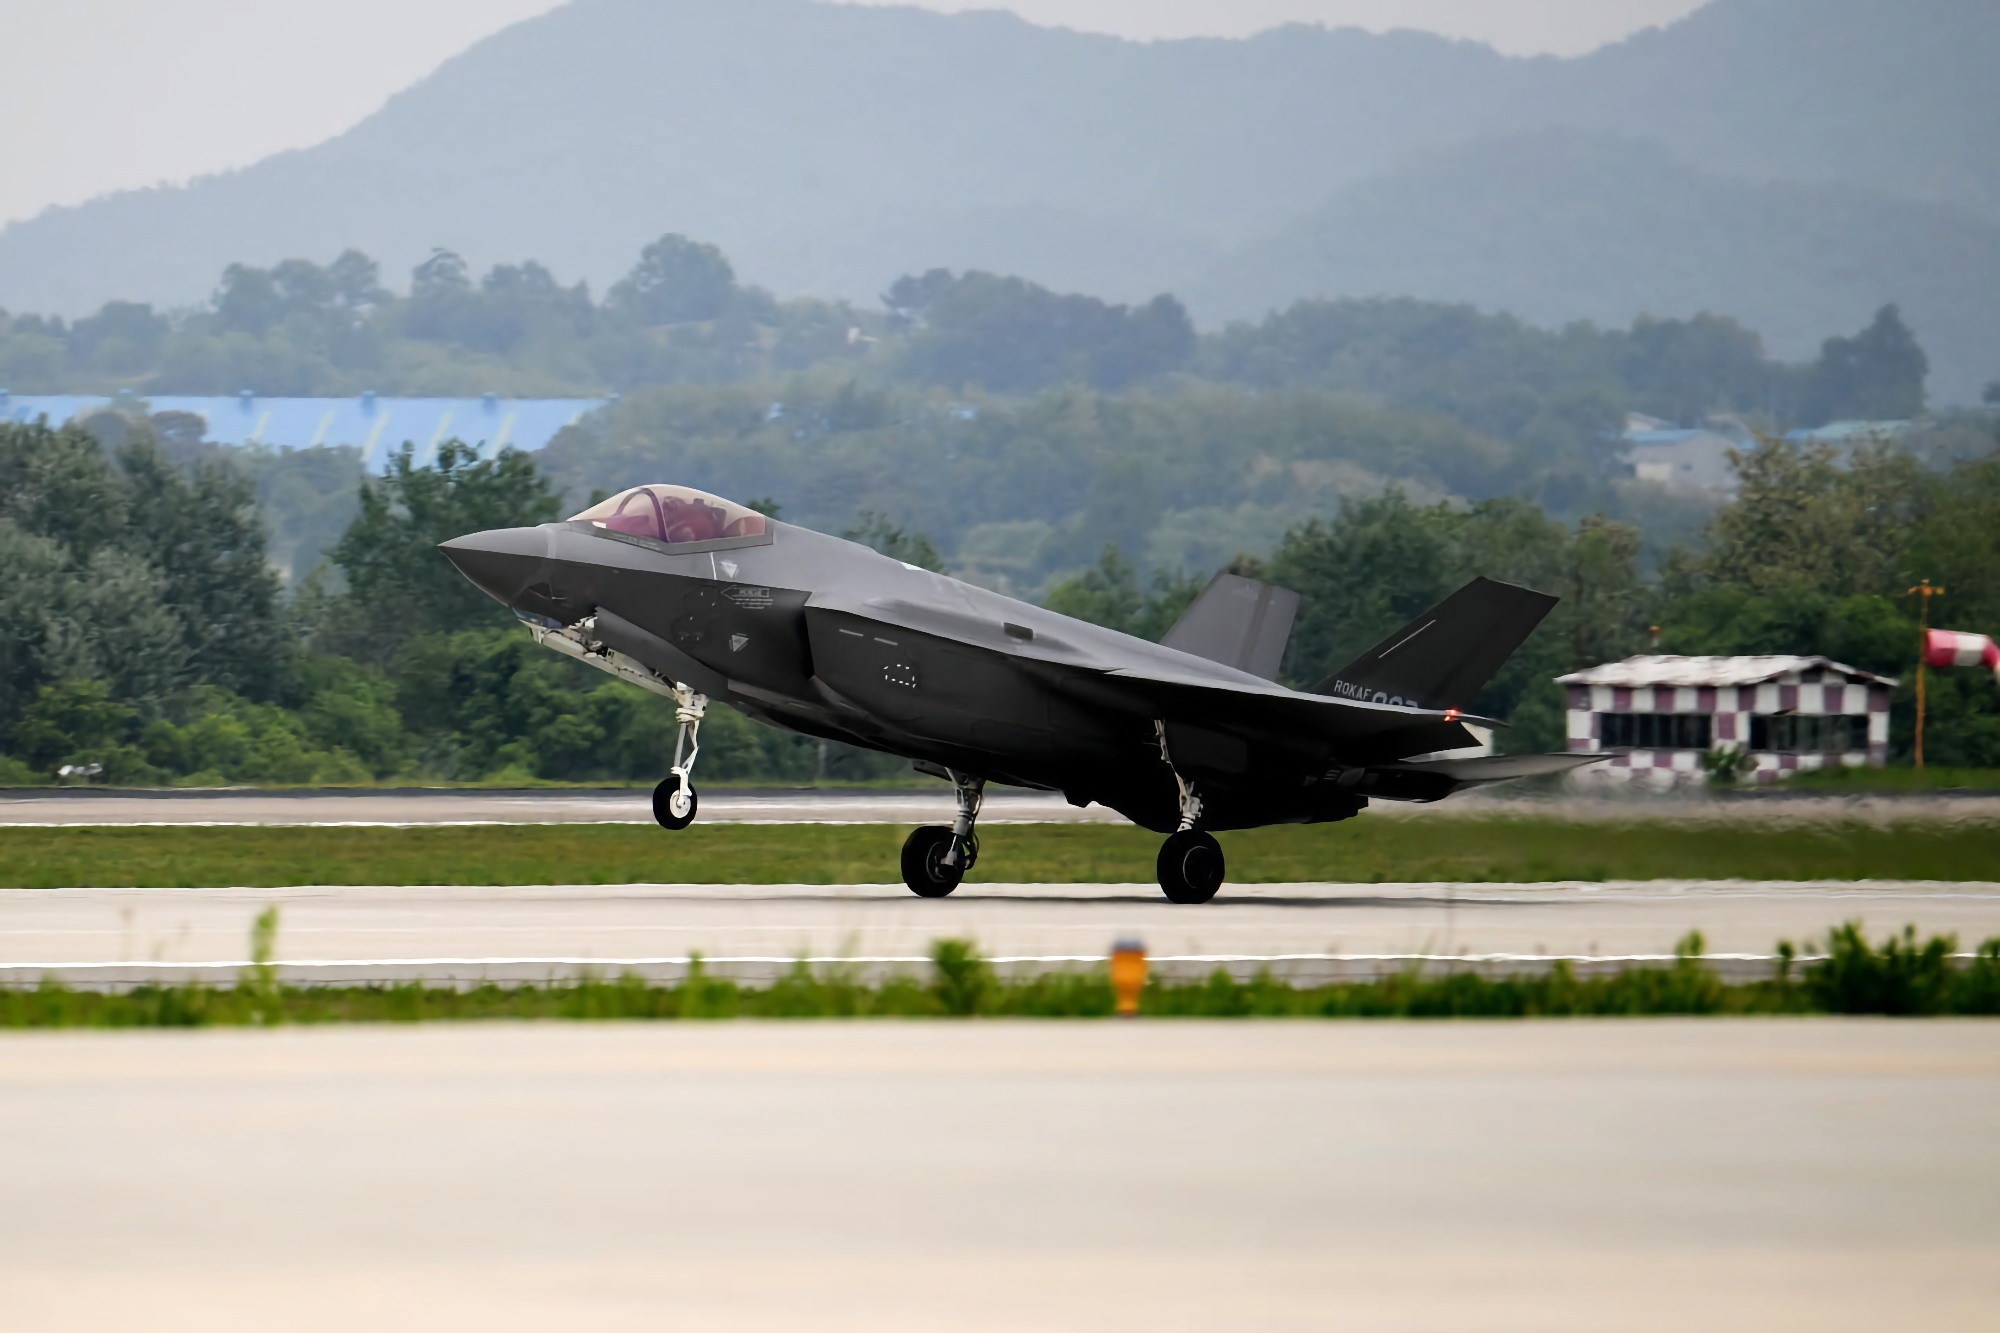 Südkorea hat beschlossen, seine Flotte von F-35 Lightning II-Kampfjets der fünften Generation aufzustocken